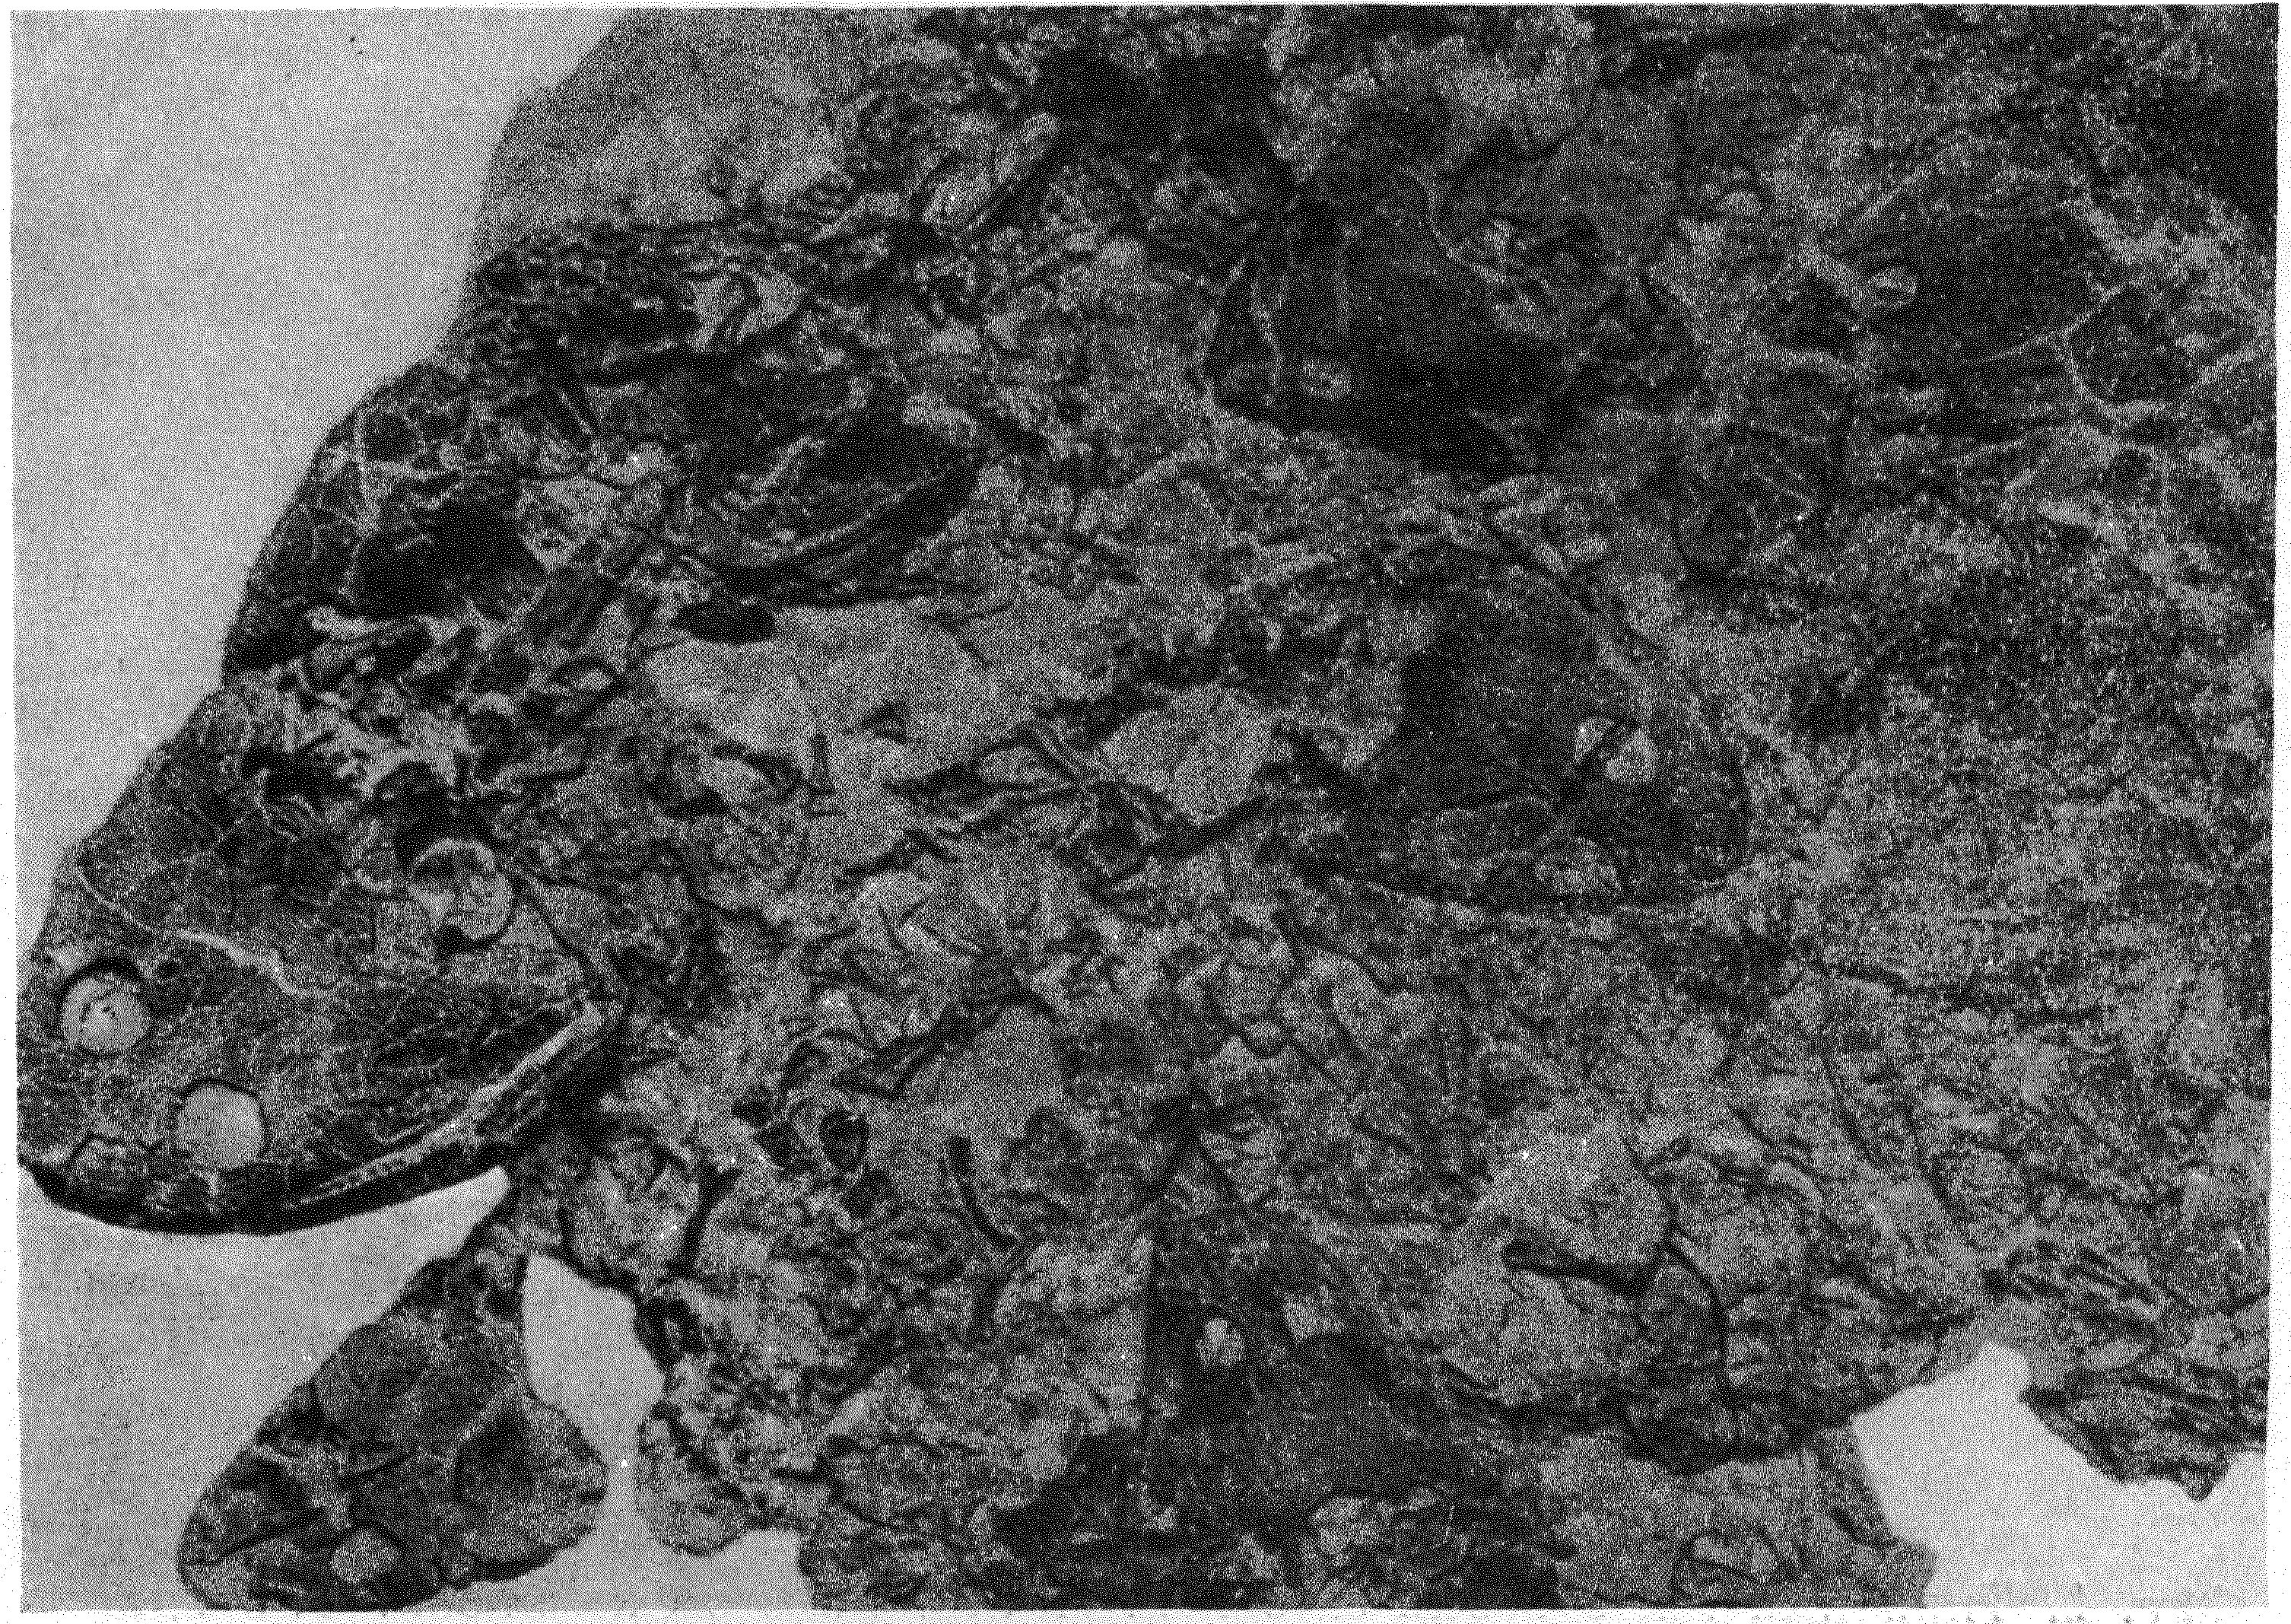 Фиг. 1. Массовое захоронение стегоцефалов Trimerorhachis на поверхности напластования между двумя пачками окремнелых мергелистых глин. Нижнепермские Красные Слои Техаса. Сильно уменьшено